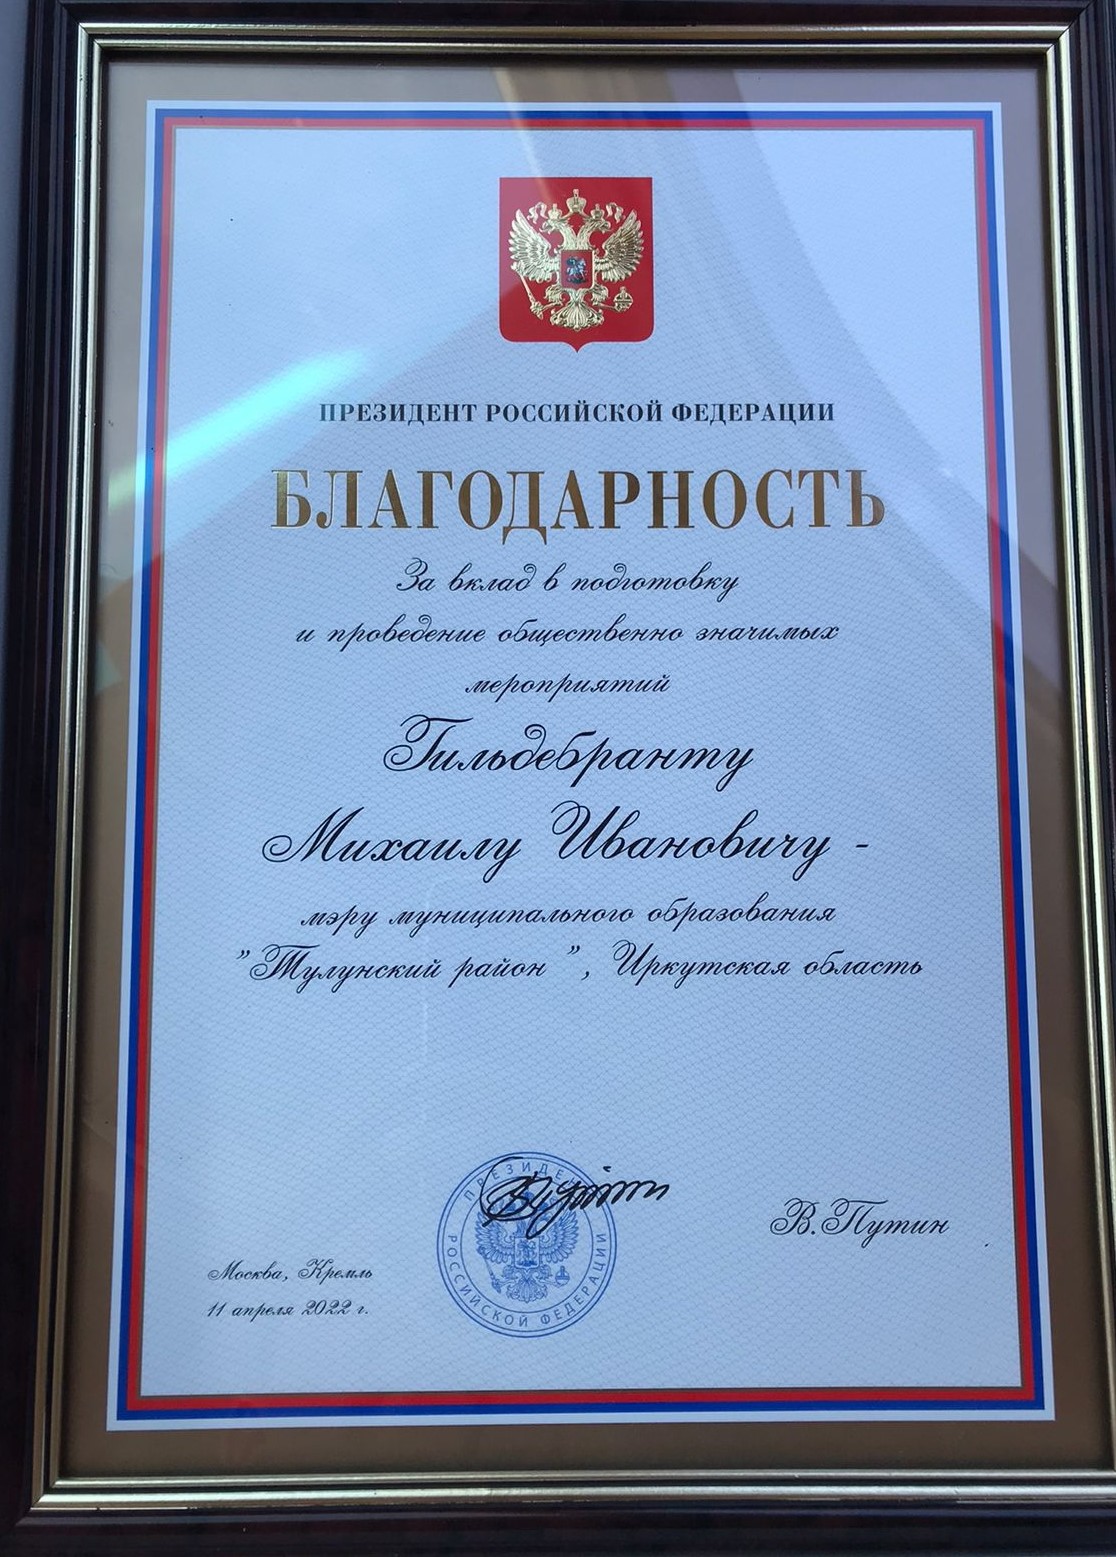  Мэра Тулунского муниципального района Михаила Ивановича Гильдебранта отметили государственной наградой Российской Федерации